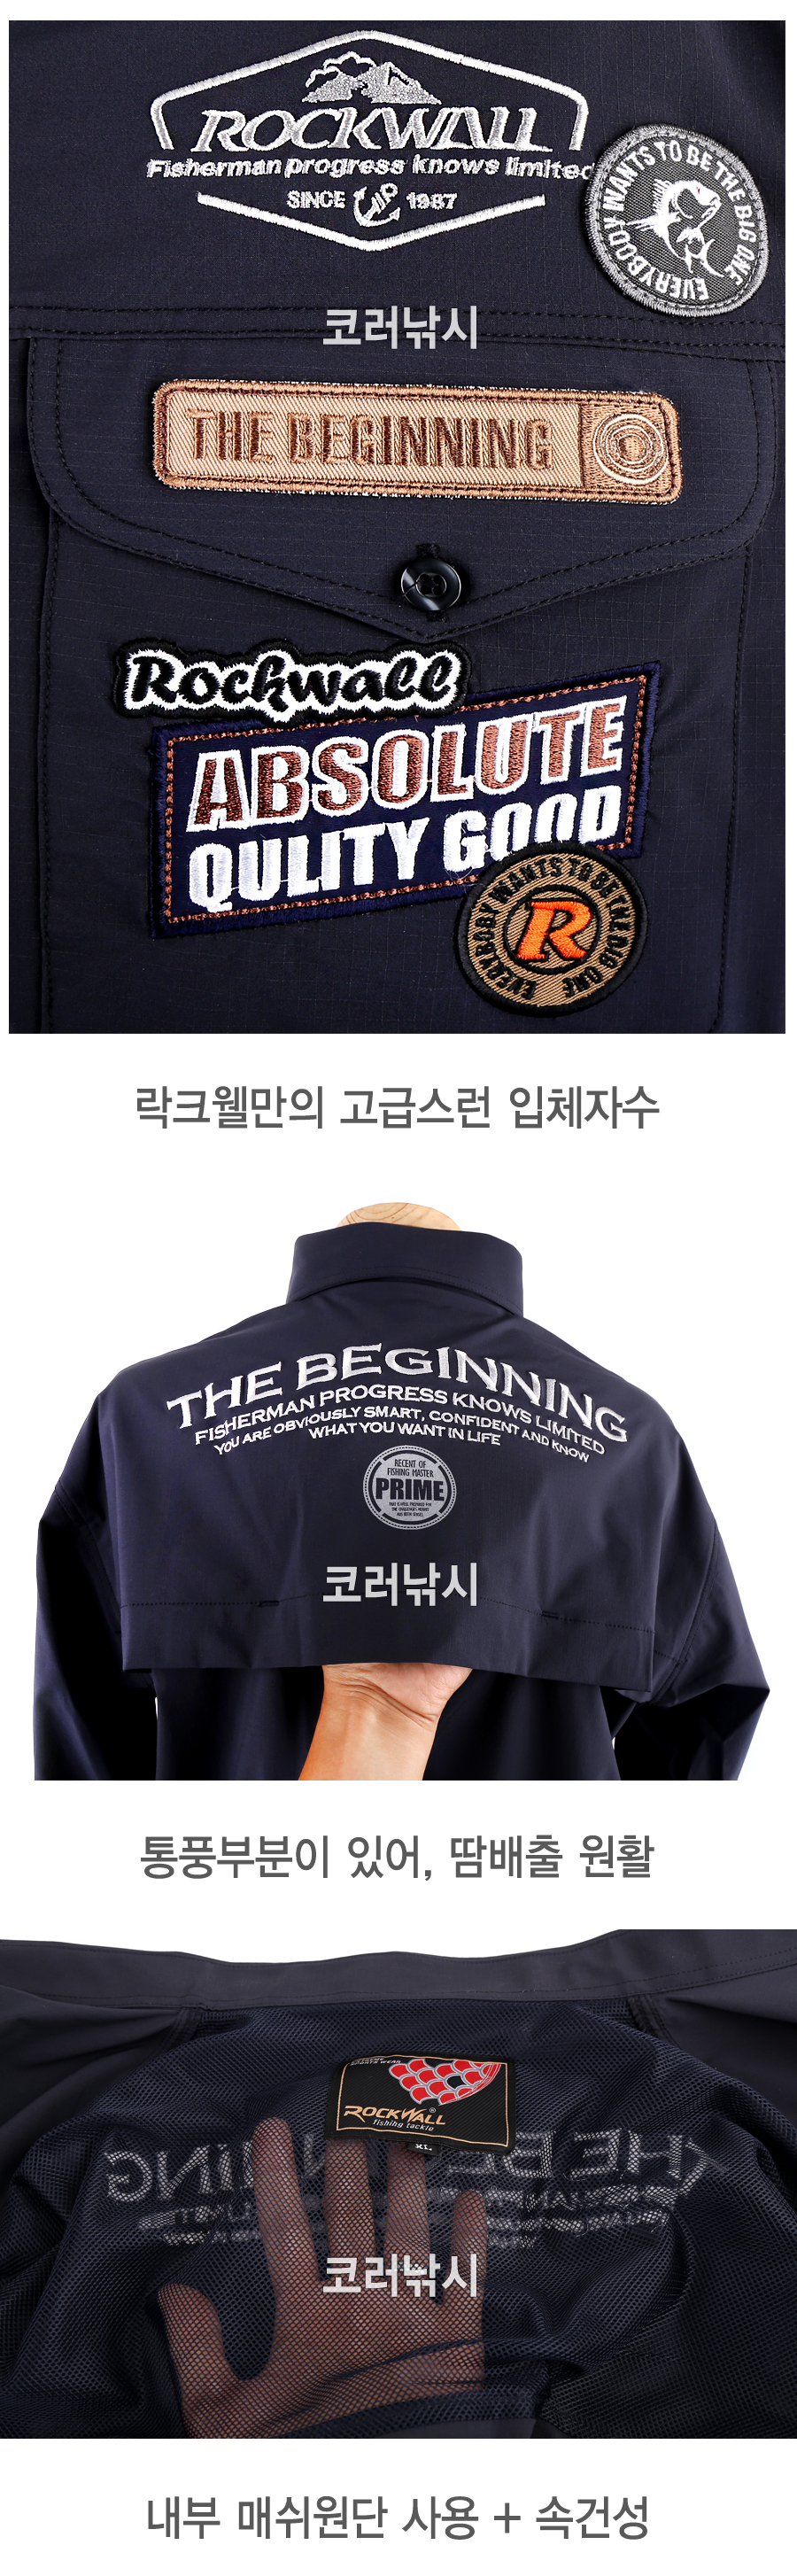 락크웰 R208 남방 made in korea 피싱셔츠 기능성남방 기능성셔츠 통기셔츠 통기남방 낚시옷